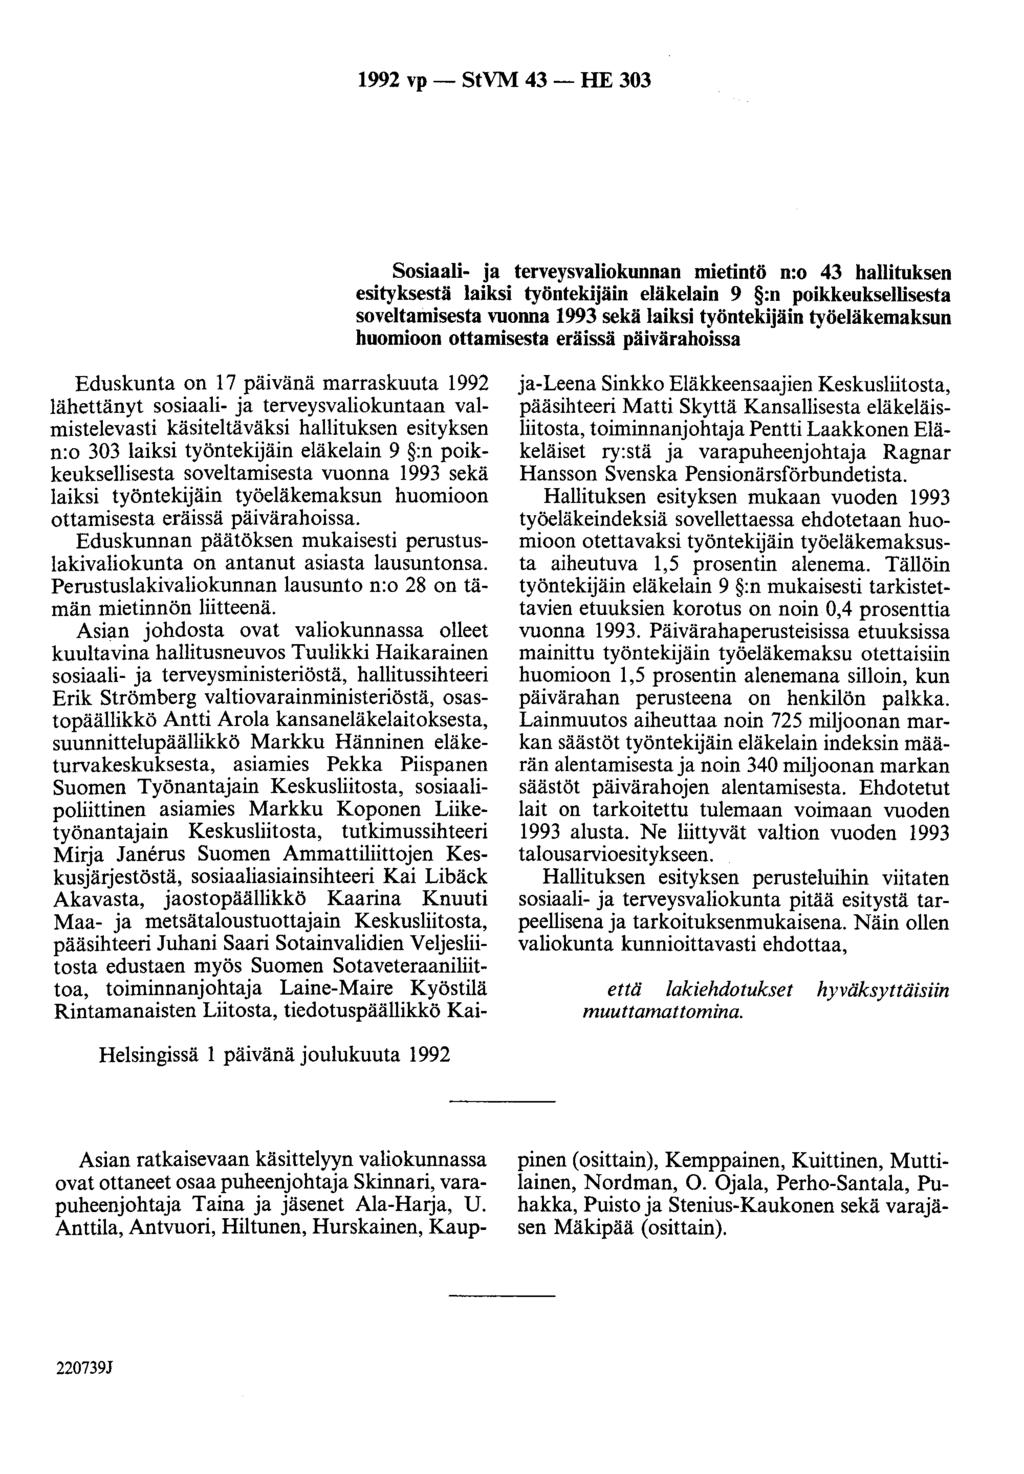 1992 vp - StVM 43 - HE 303 Sosiaali- ja terveysvaliokunnan mietintö n:o 43 hallituksen esityksestä laiksi työntekijäin eläkelain 9 :n poikkeuksellisesta soveltamisesta vuonna 1993 sekä laiksi